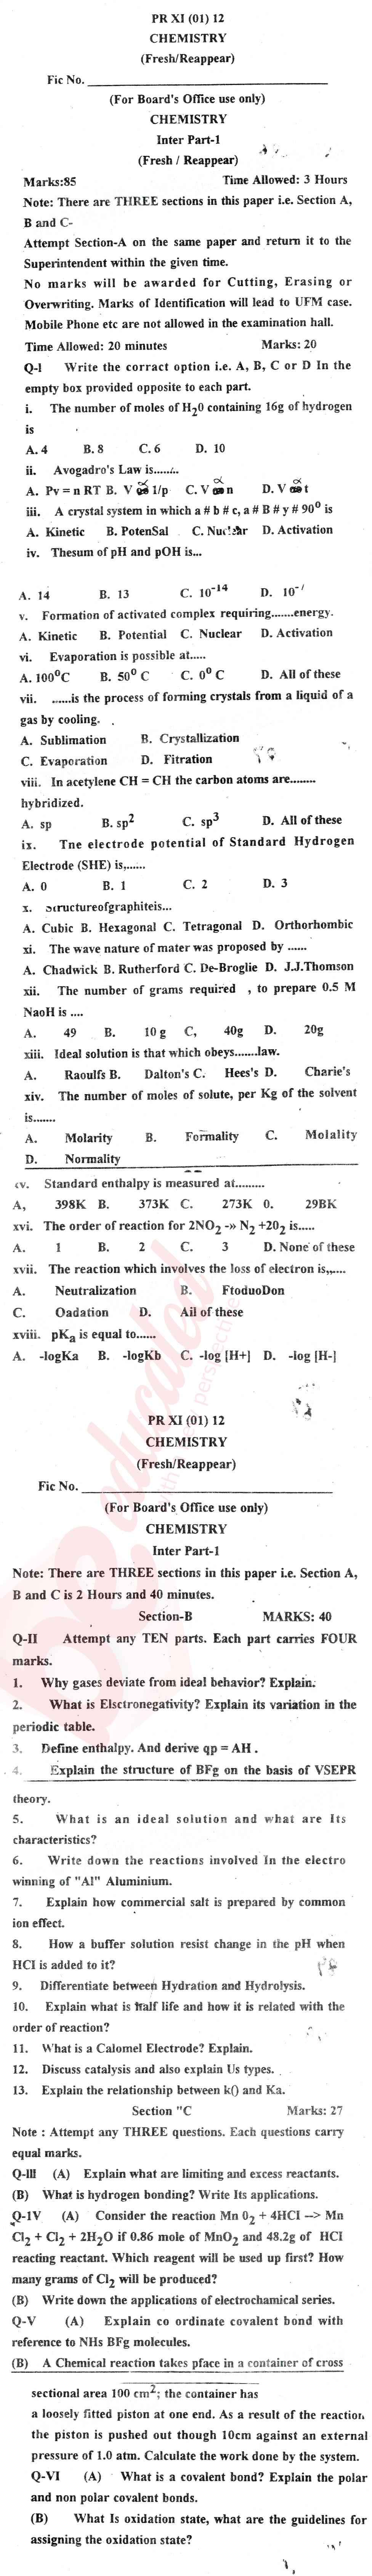 Chemistry FSC Part 1 Past Paper Group 1 BISE Kohat 2012